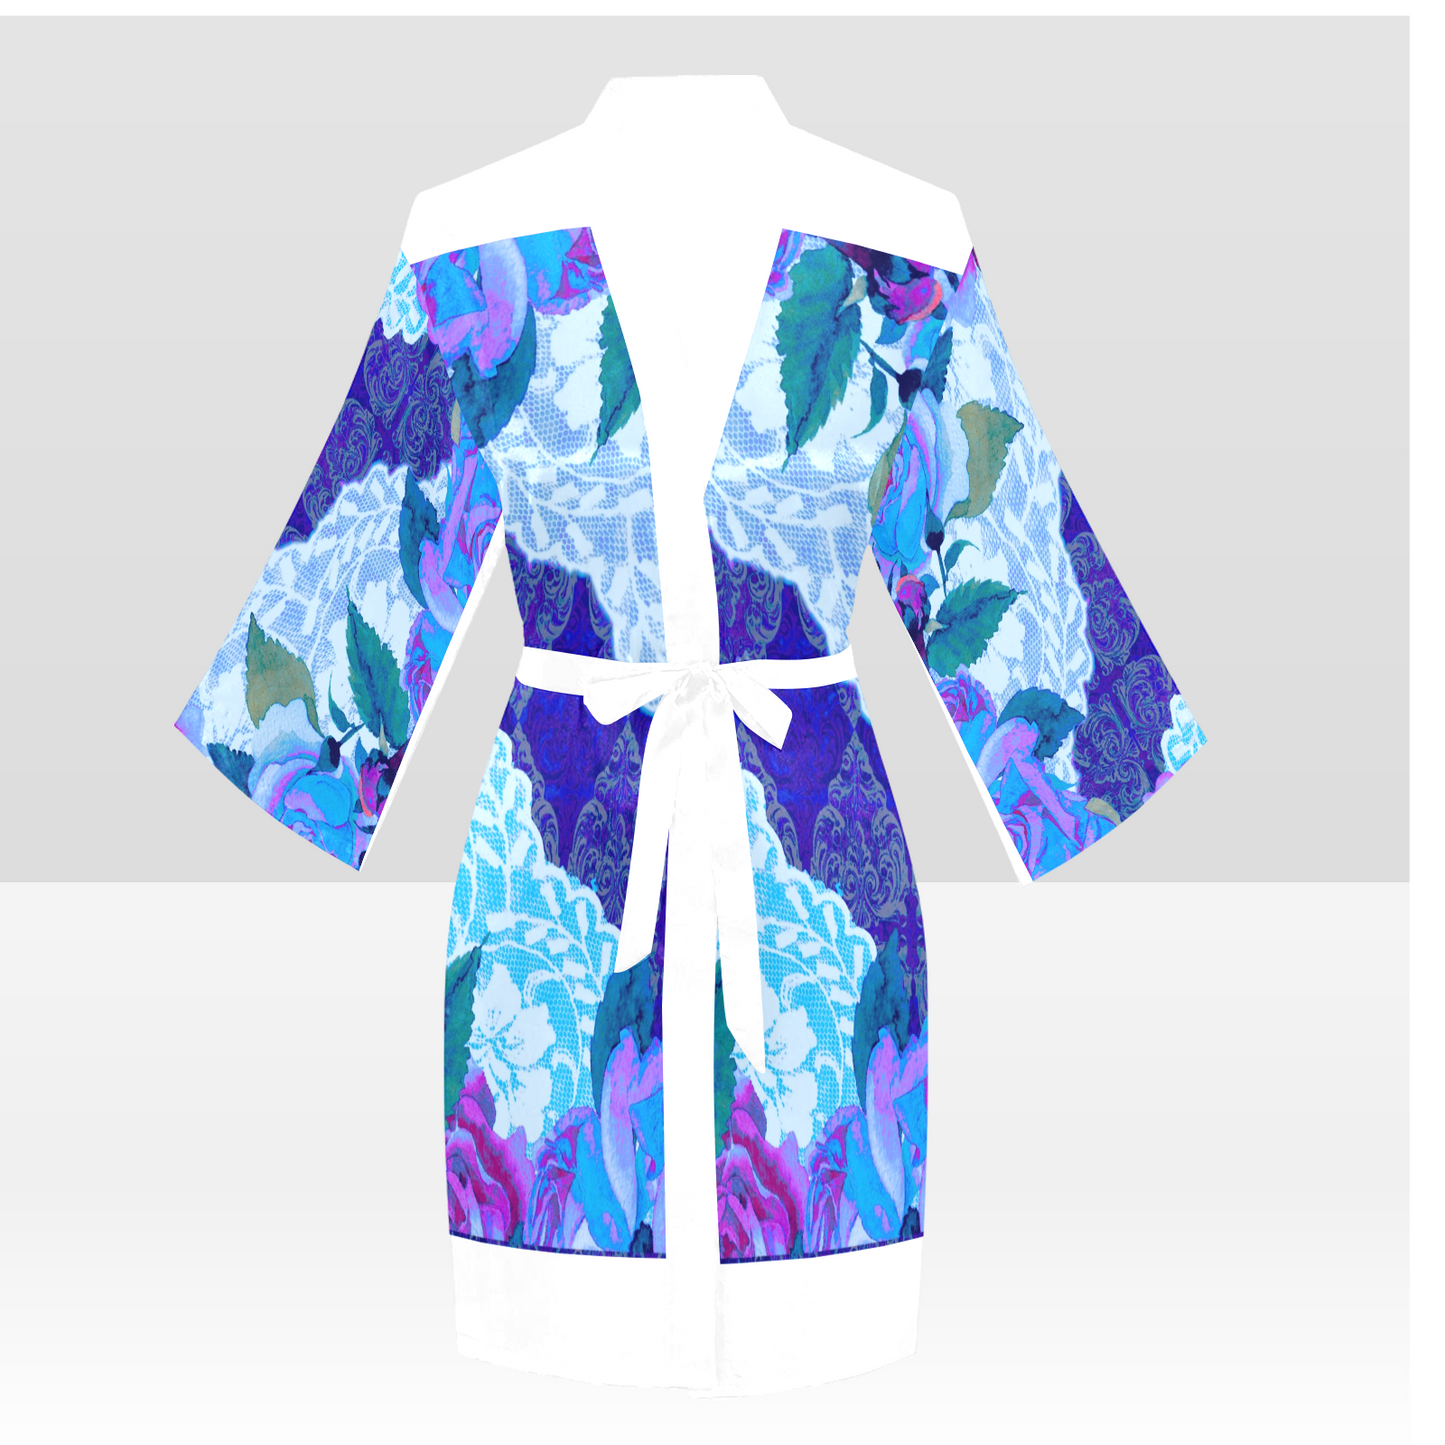 Victorian Lace Kimono Robe, Black or White Trim, Sizes XS to 2XL, Design 20